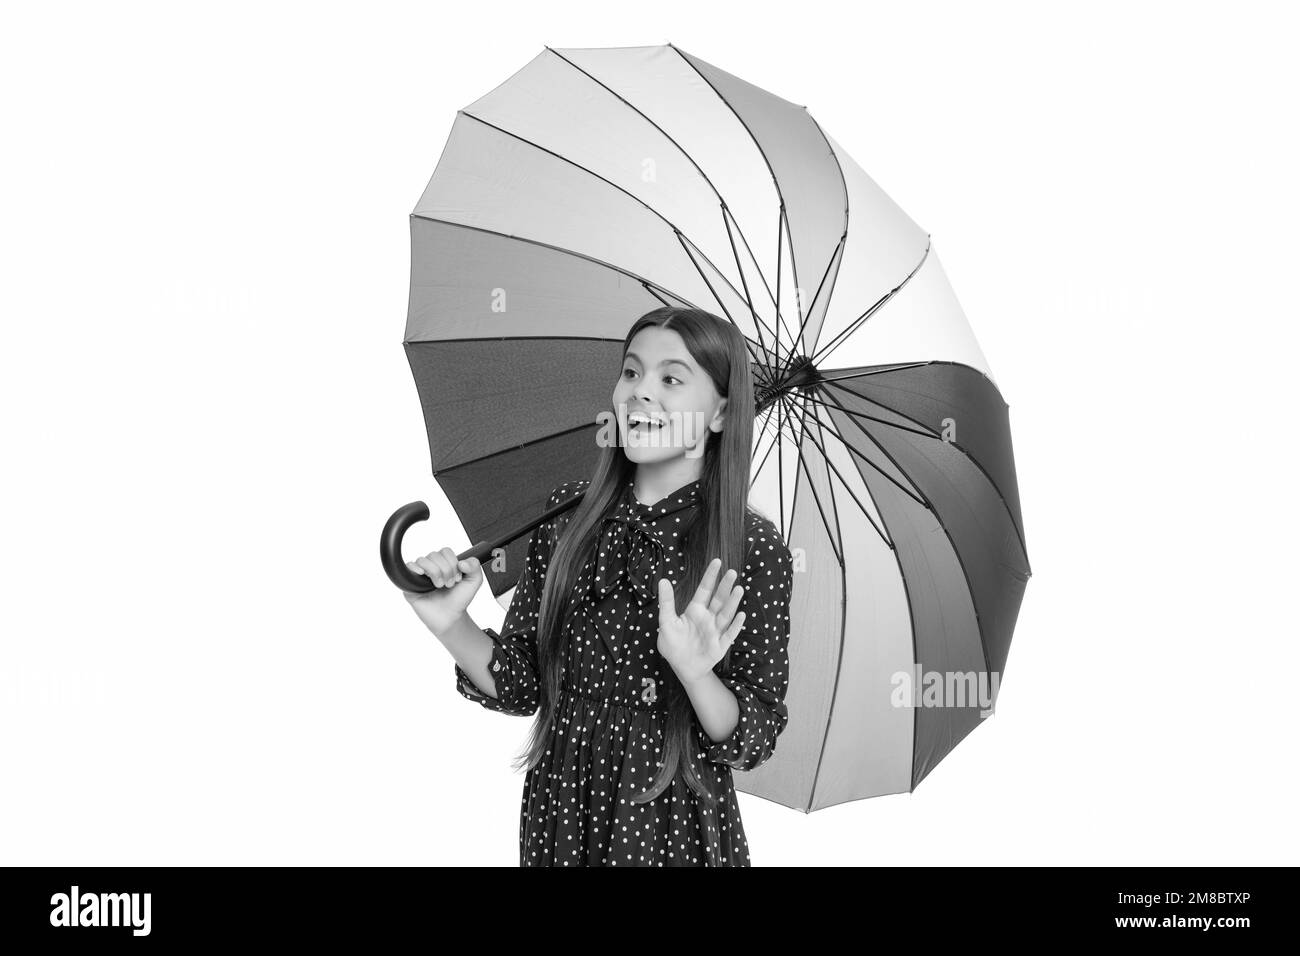 le parasol de protection contre la pluie multicolore, isolé sur fond blanc, se tient un enfant émerveillé bonjour, automne Banque D'Images